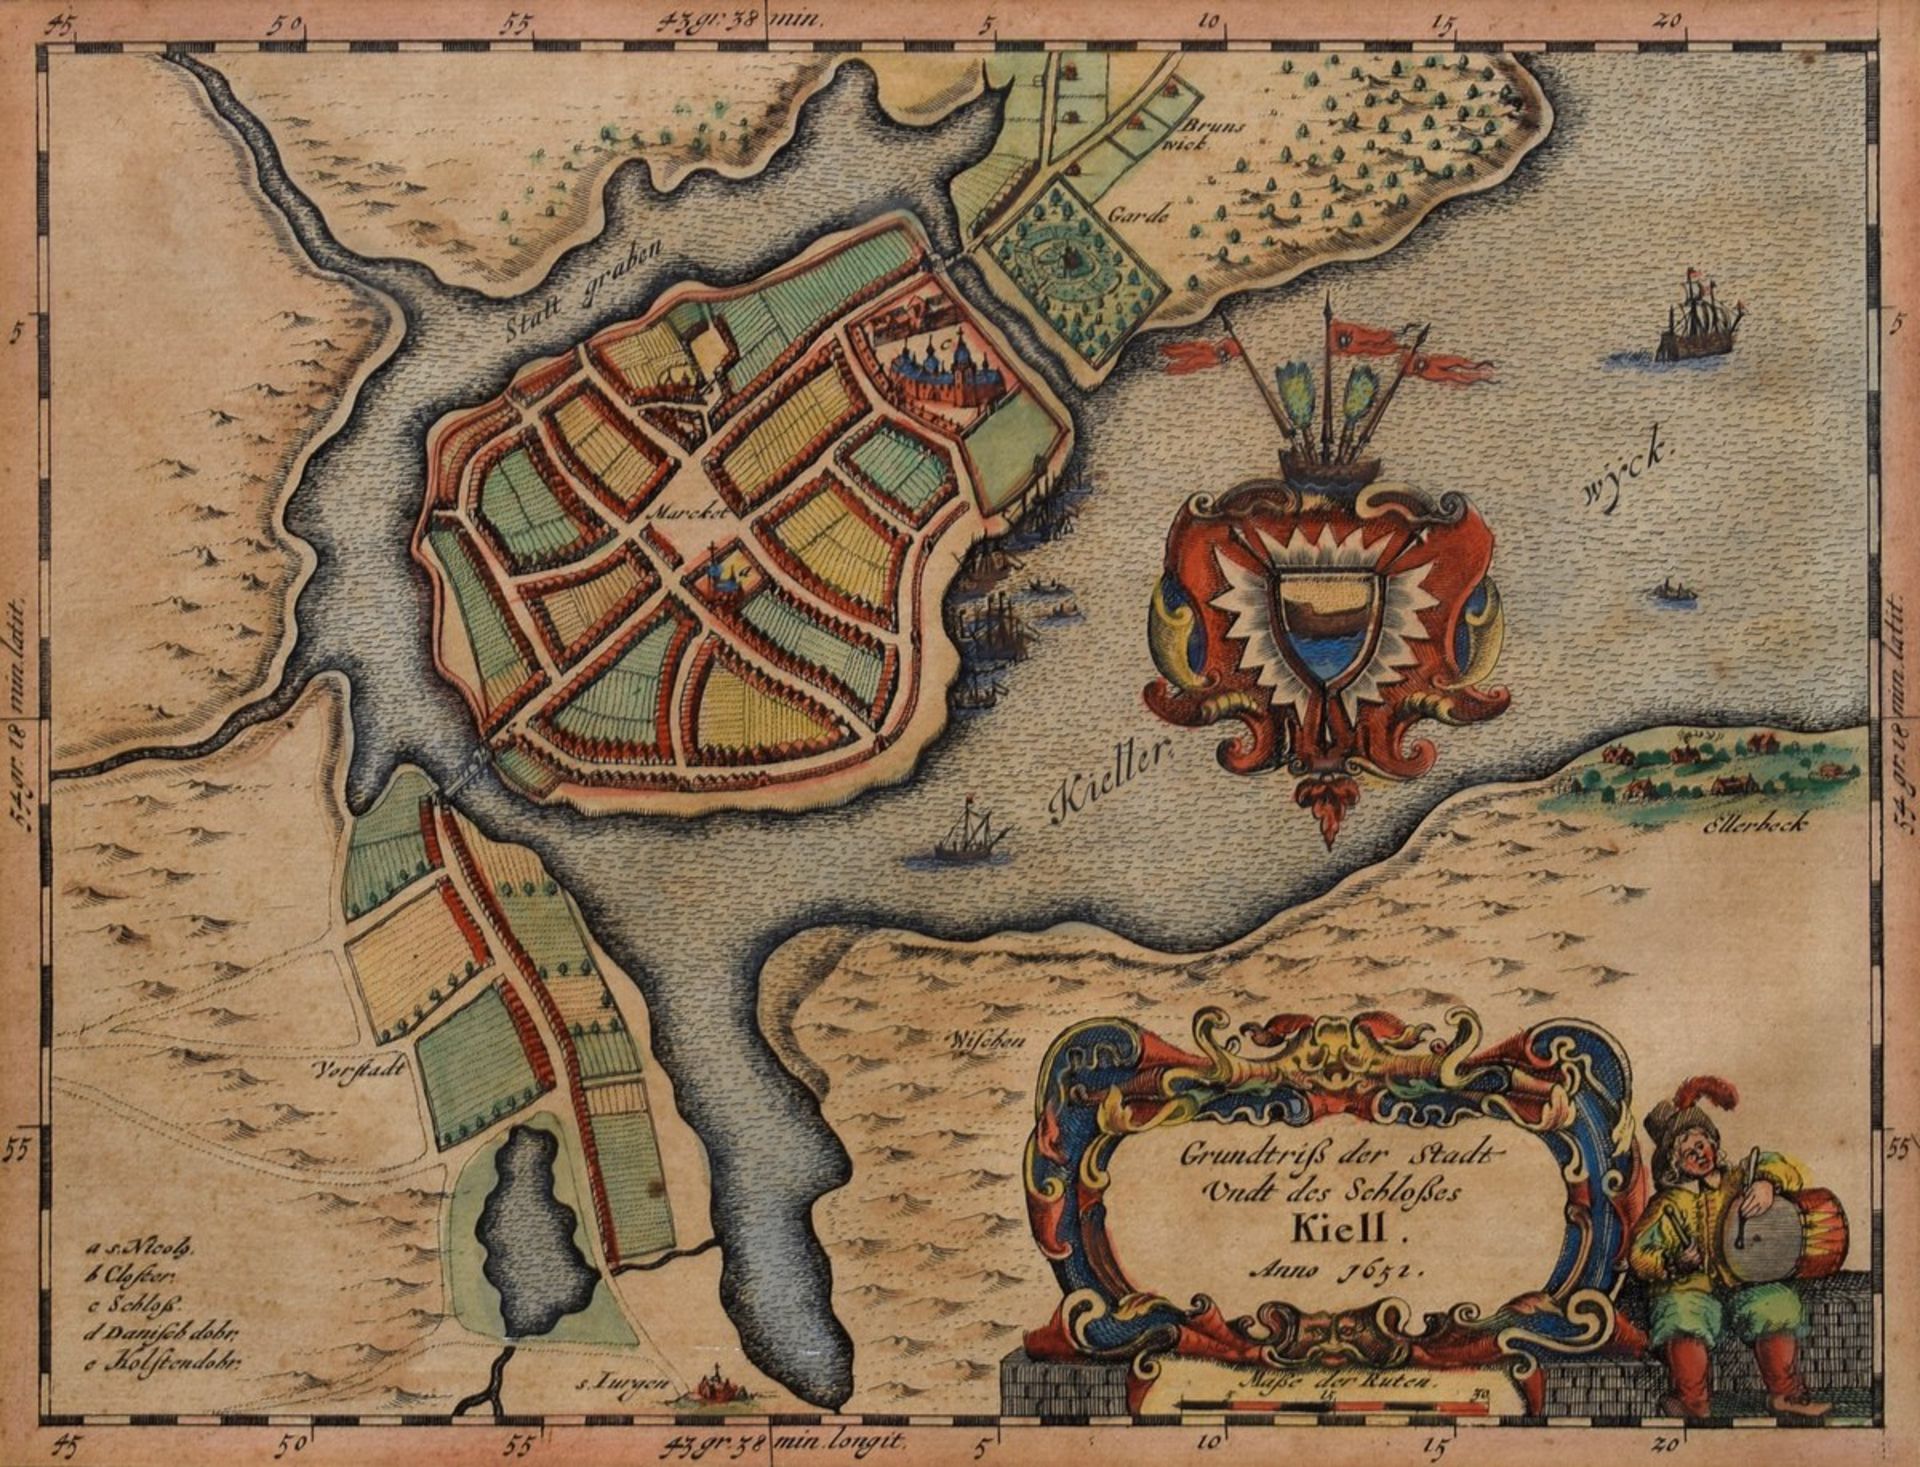 Mejer, Johannes (1606-1674) "Grundtriß der Stadt Undt des Schloßes Kiell", 1652, colorierter